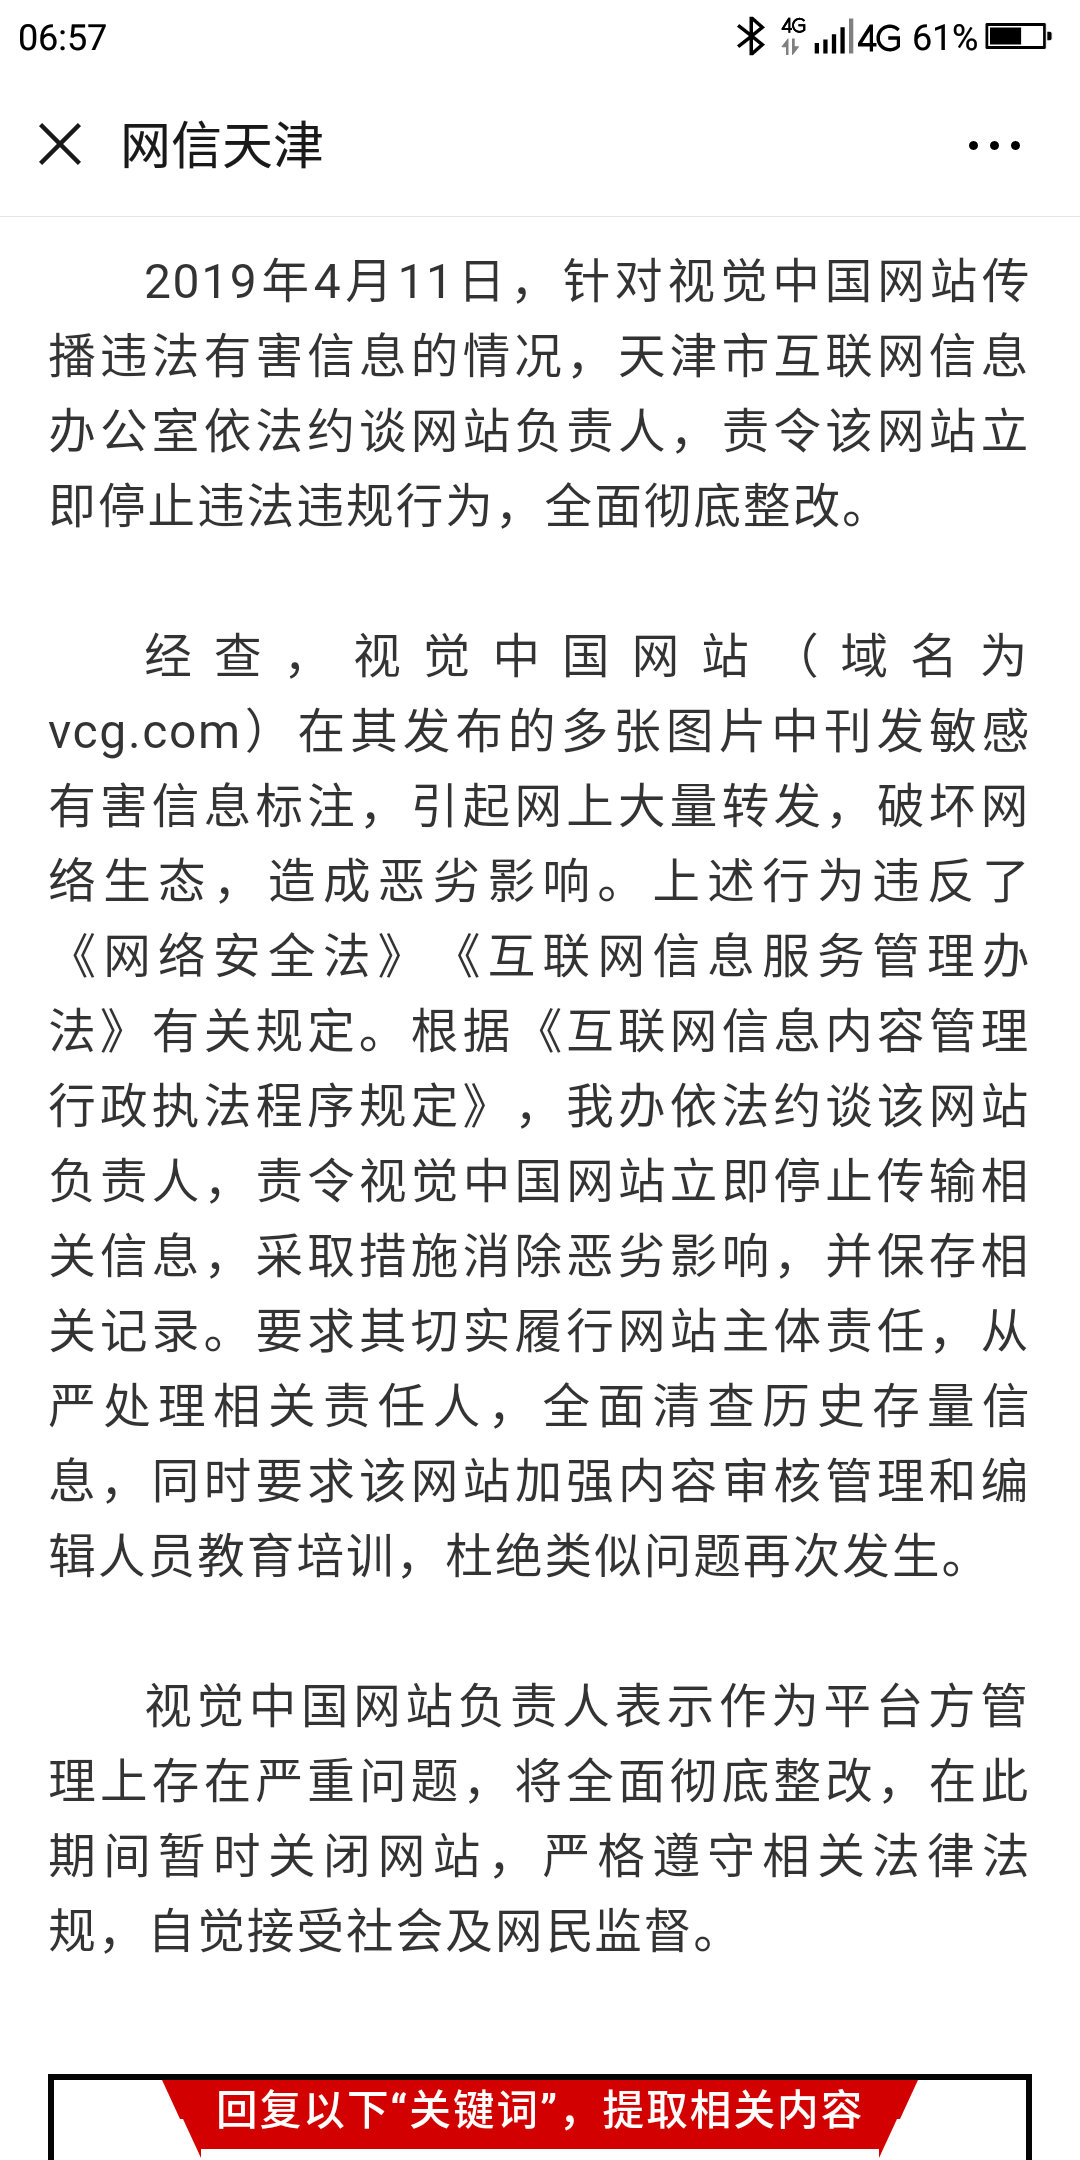 4月11日,针对视觉中国网站传播违法有害信息的